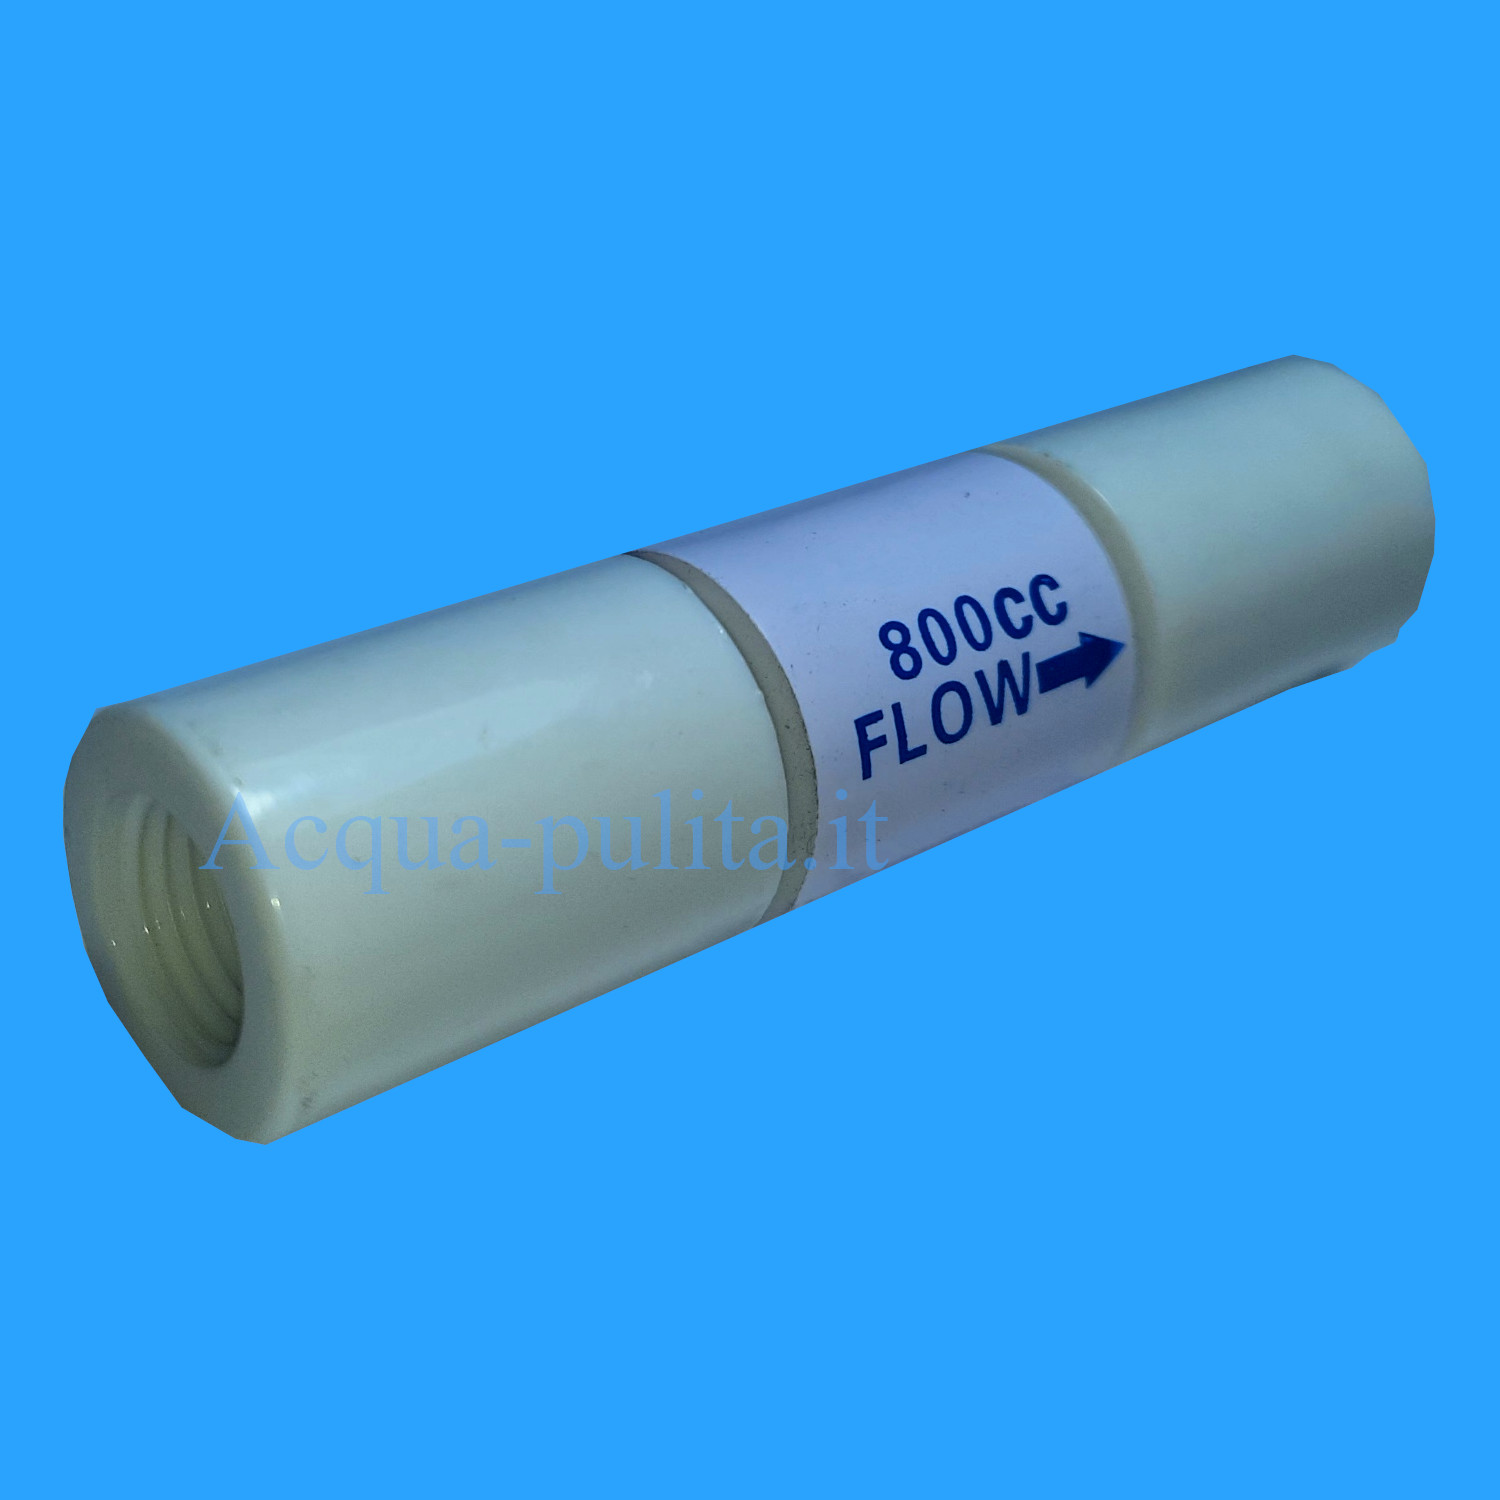 Valvola restringi flusso o flow per acqua di scarto per depuratori osmosi inversa 800 cc